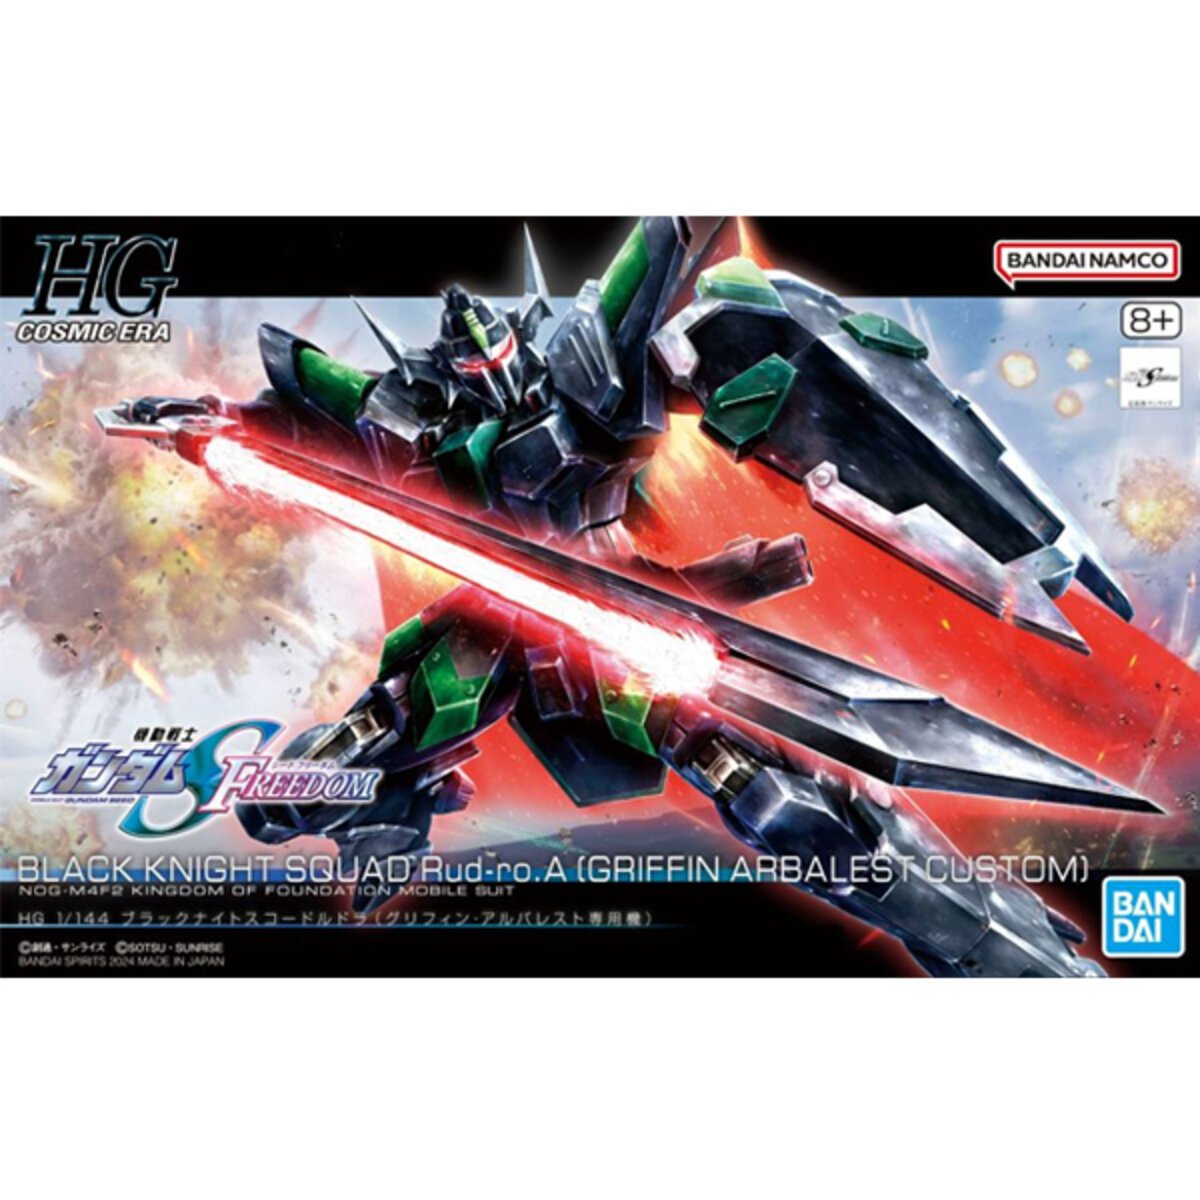 Bandai 5066305 1/144 HG Cosmic Era Gundam Black Knight Squad Rud-ro Model Kit